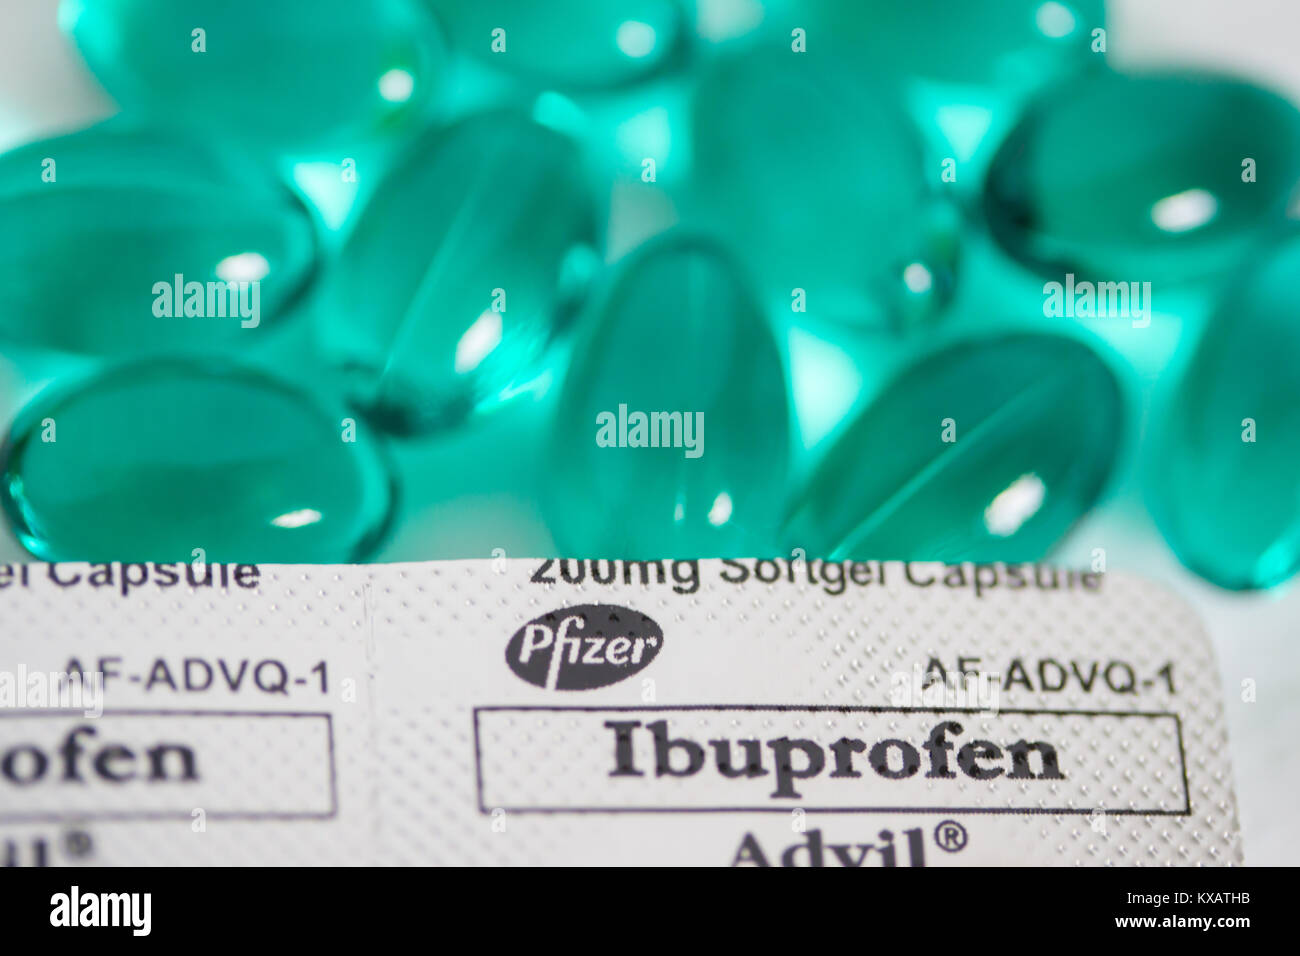 Green Advil capsule,(Ibuprofene)Un recente studio pubblicato nella rivista la procedura dell'Accademia nazionale delle scienze rivendicazioni che ibuprofene ,(Advil & Motrin due prodotti di marca),ha un impatto negativo su testicoli di giovani uomini.Lo studio relazione afferma che quando prendere ibuprofene in dosi che potrebbero essere utilizzati dagli atleti, un campione di giovani uomini sviluppato una condizione ormonale che potrebbe iniziare, se non a tutti, durante il medioevo. Questa condizione è creduto di essere legati ad una ridotta fertilità. Foto Stock